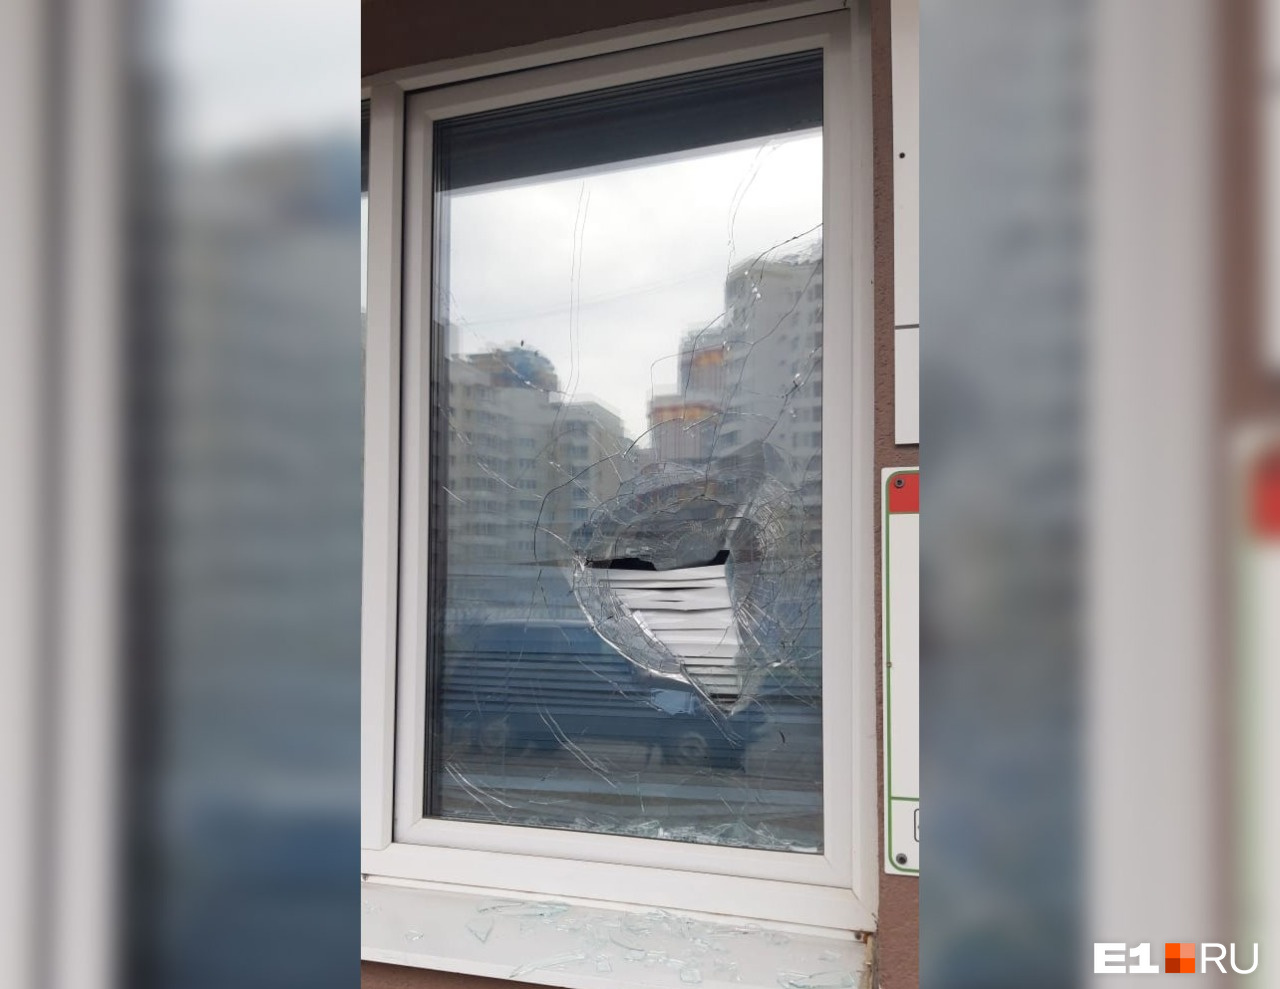 Кирпич пробил окно, залетел в помещение и едва не ранил работницу, измерявшую температуру у посетителей